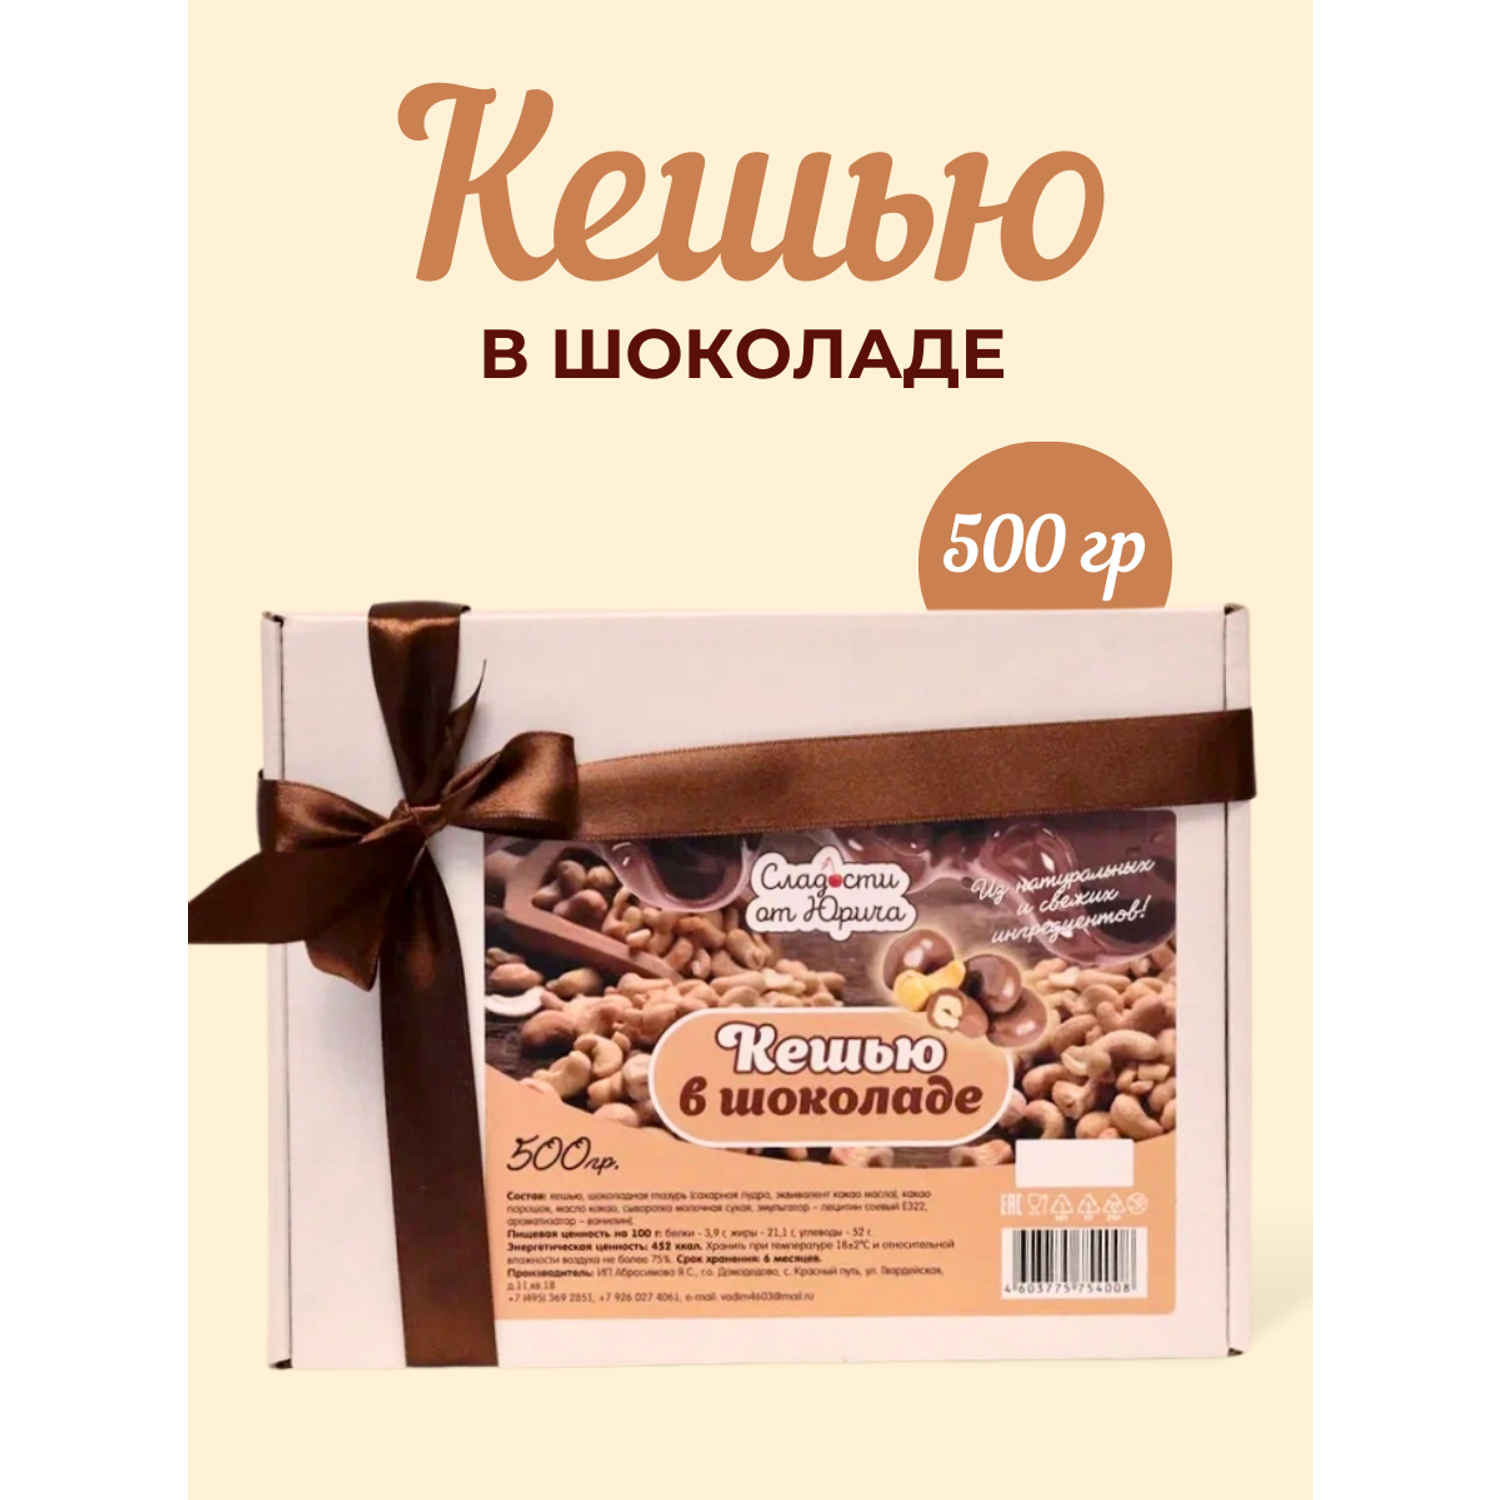 Кешью в шоколаде Сладости от Юрича 500гр - фото 1